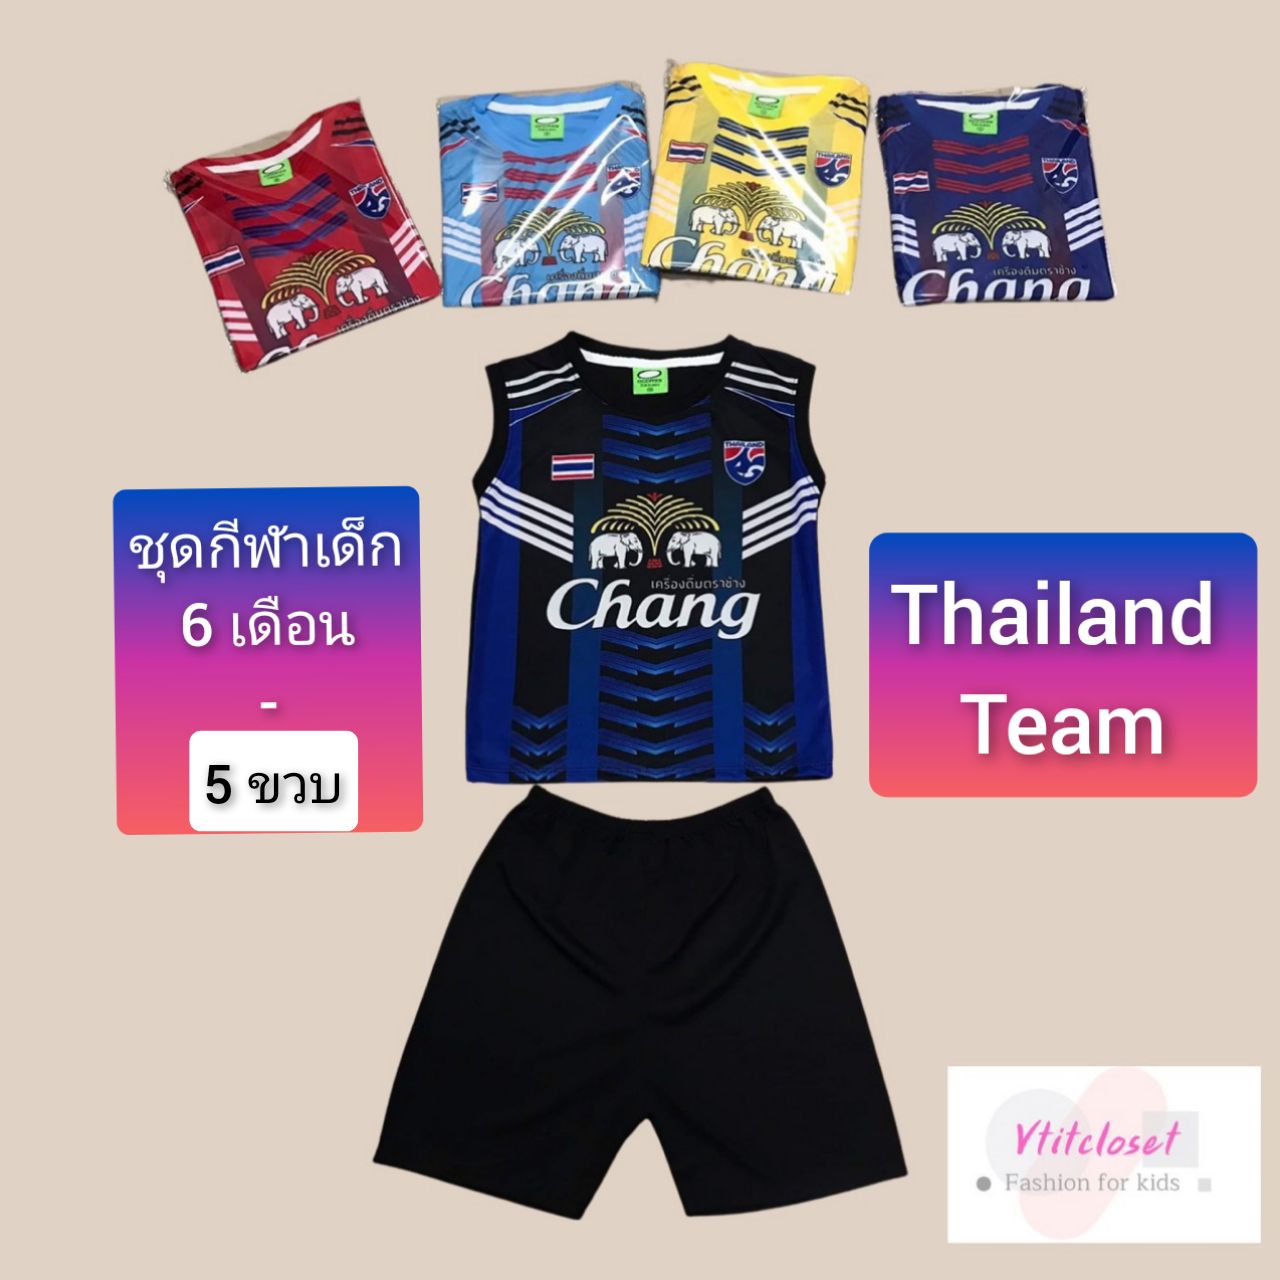 Vtitcloset ชุดบอลเด็ก(กล้าม) Thailand team ชุดบาส ชุดกีฬาเด็ก 6 เดือน-4 ขวบ (เลือกสี/เลือกแบบ ได้) แบบเข้าใหม่ตลอดนะ (ดูรอบ อก เสื้อ เป็นเกณฑ์)